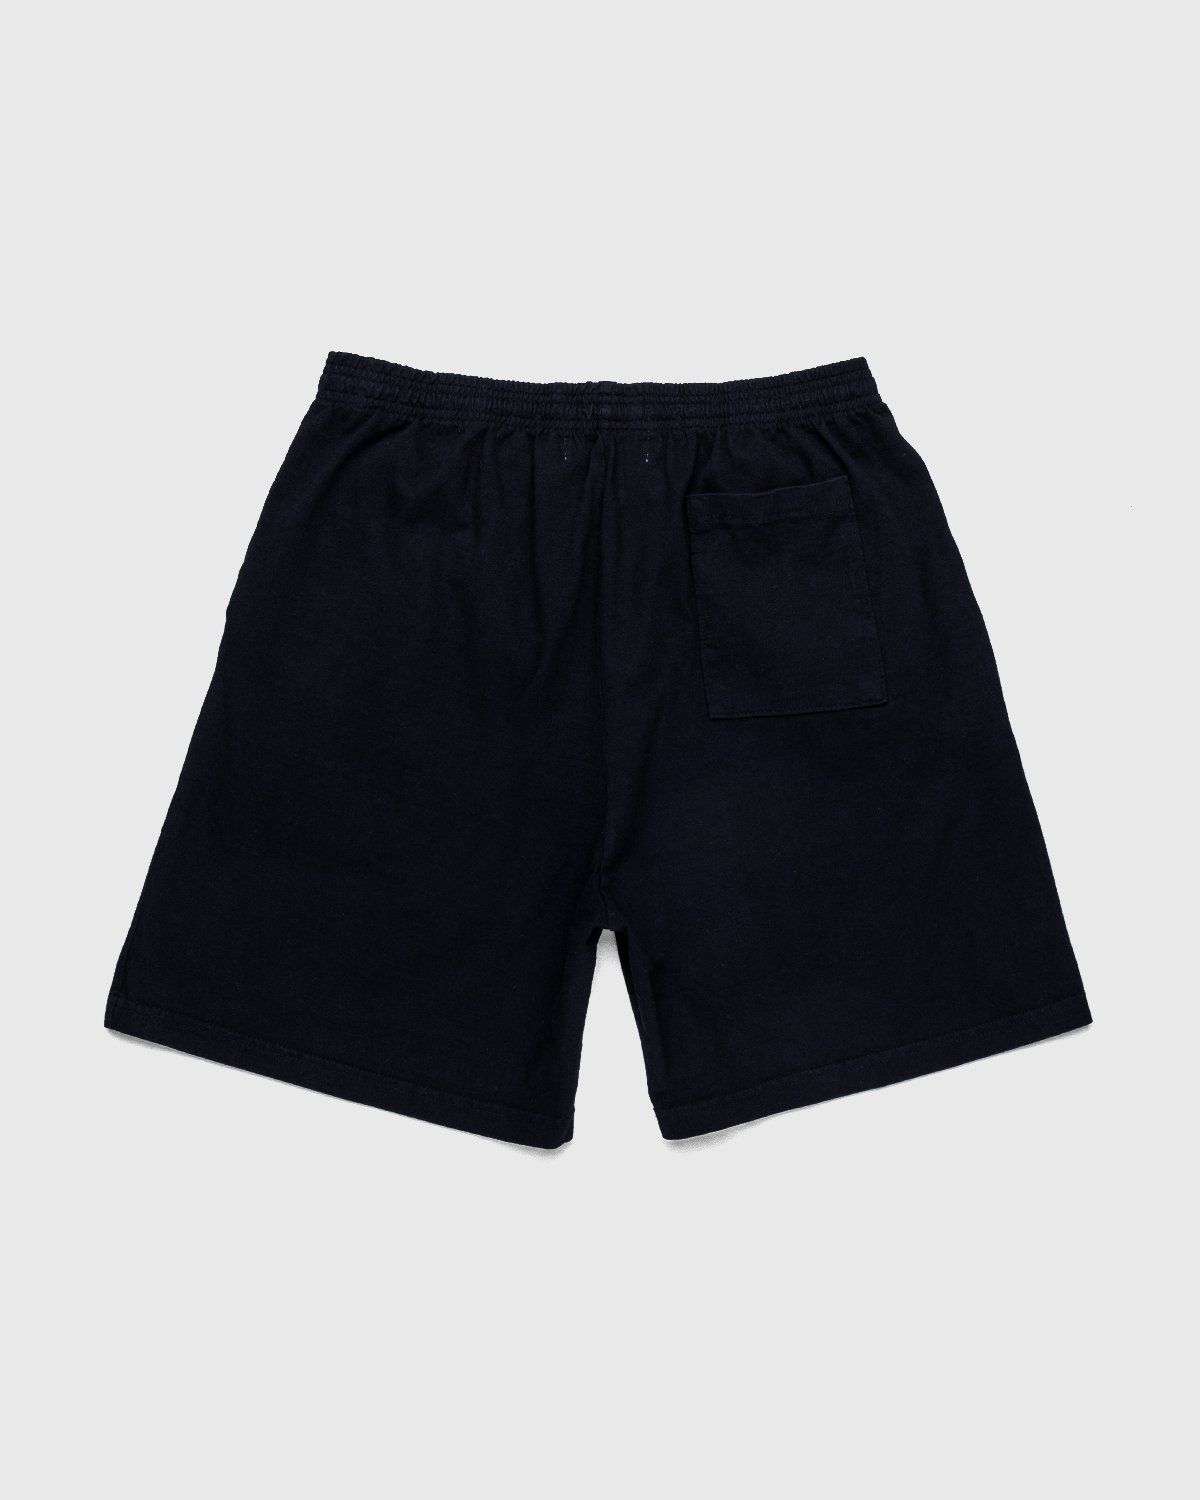 Bstroy x Highsnobiety – Shorts Black - Shorts - Black - Image 2